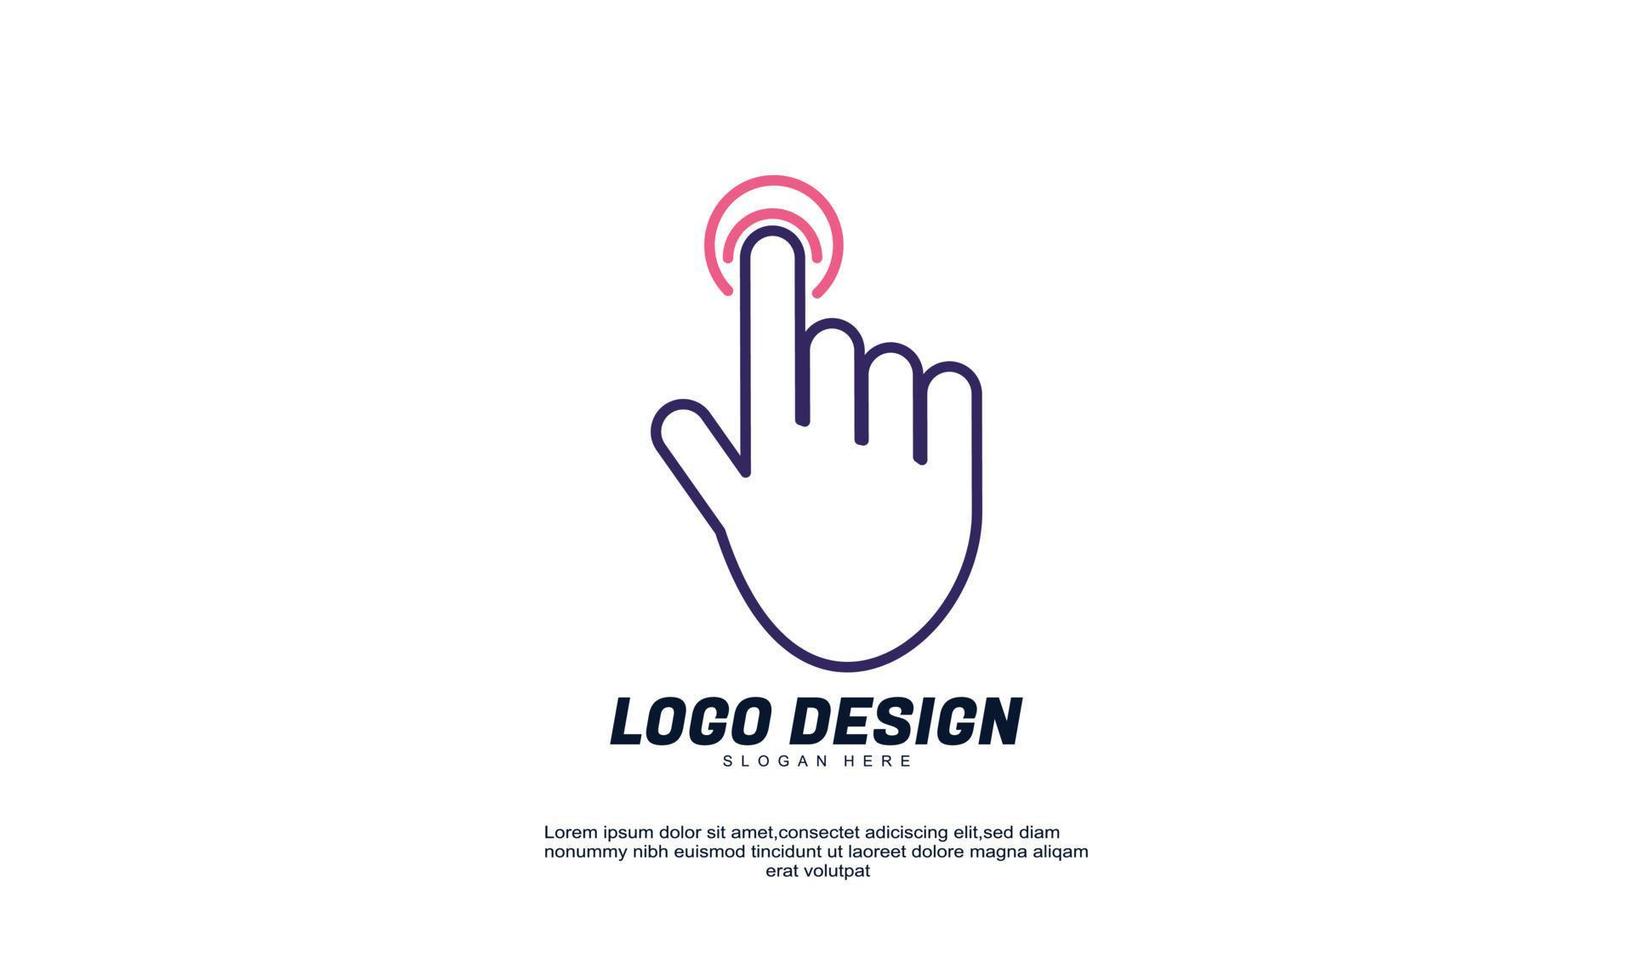 estoque vetor abstrato criativo moderno toque de dedo design elementos de design de logotipo melhores para logotipos e identidade de marca de negócios da empresa